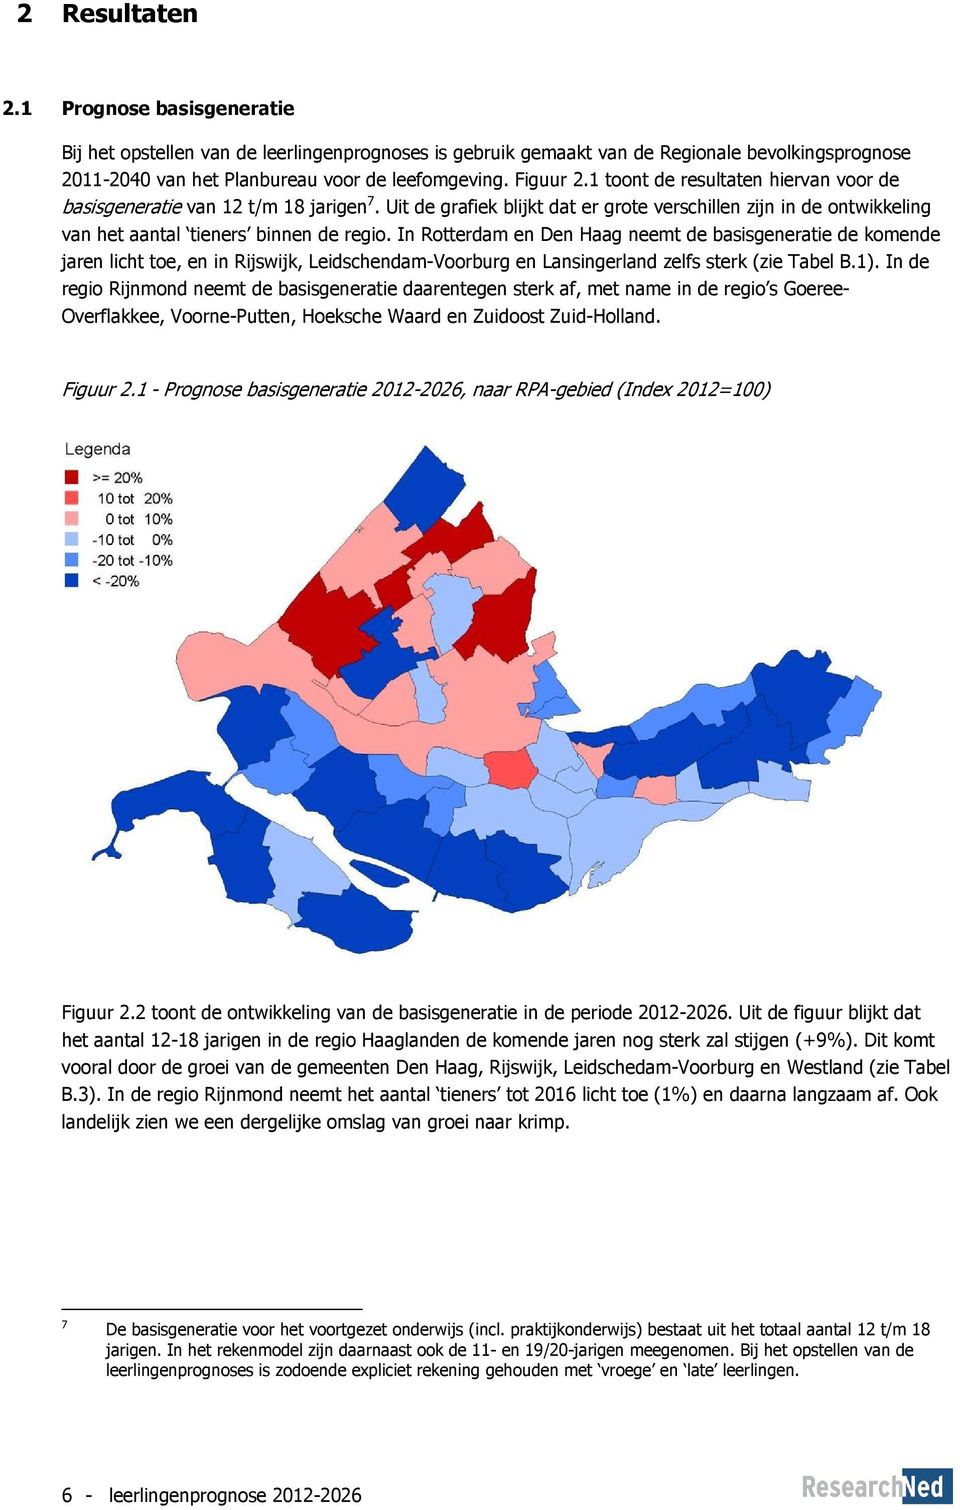 In Rotterdam en Den Haag neemt de basisgeneratie de komende jaren licht toe, en in Rijswijk, Leidschendam-Voorburg en Lansingerland zelfs sterk (zie Tabel B.1).